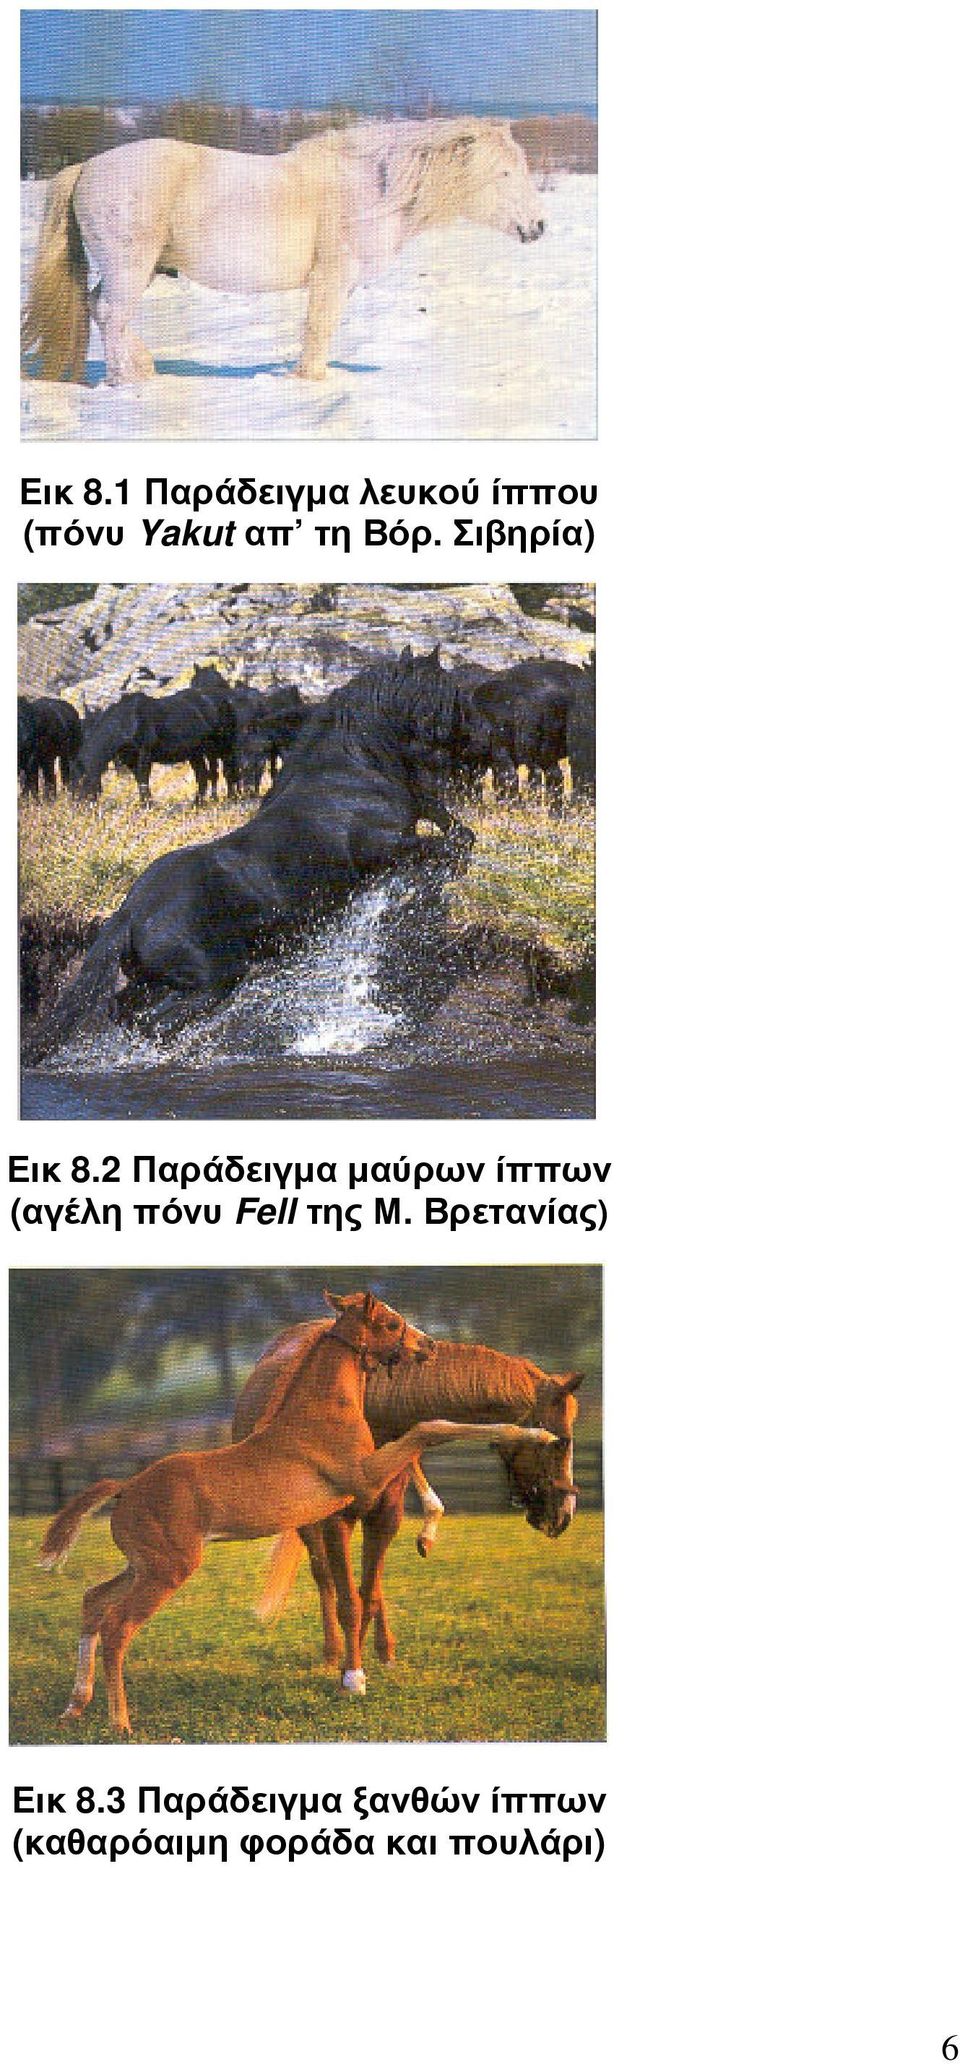 Σιβηρία) 2 Παράδειγµα µαύρων ίππων (αγέλη πόνυ